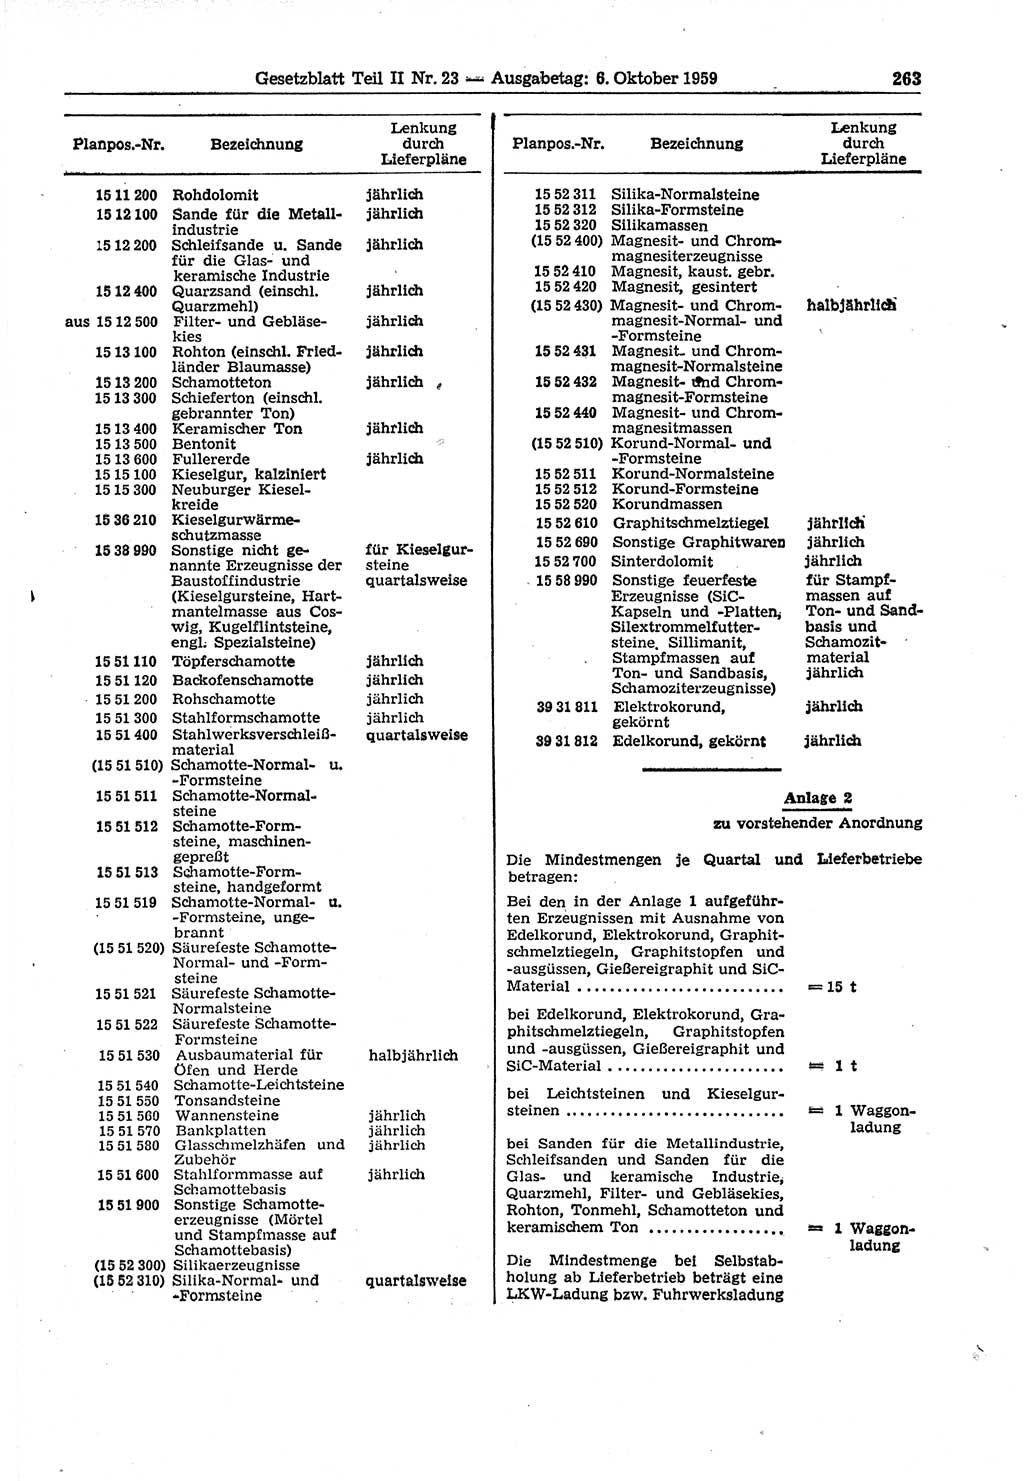 Gesetzblatt (GBl.) der Deutschen Demokratischen Republik (DDR) Teil ⅠⅠ 1959, Seite 263 (GBl. DDR ⅠⅠ 1959, S. 263)